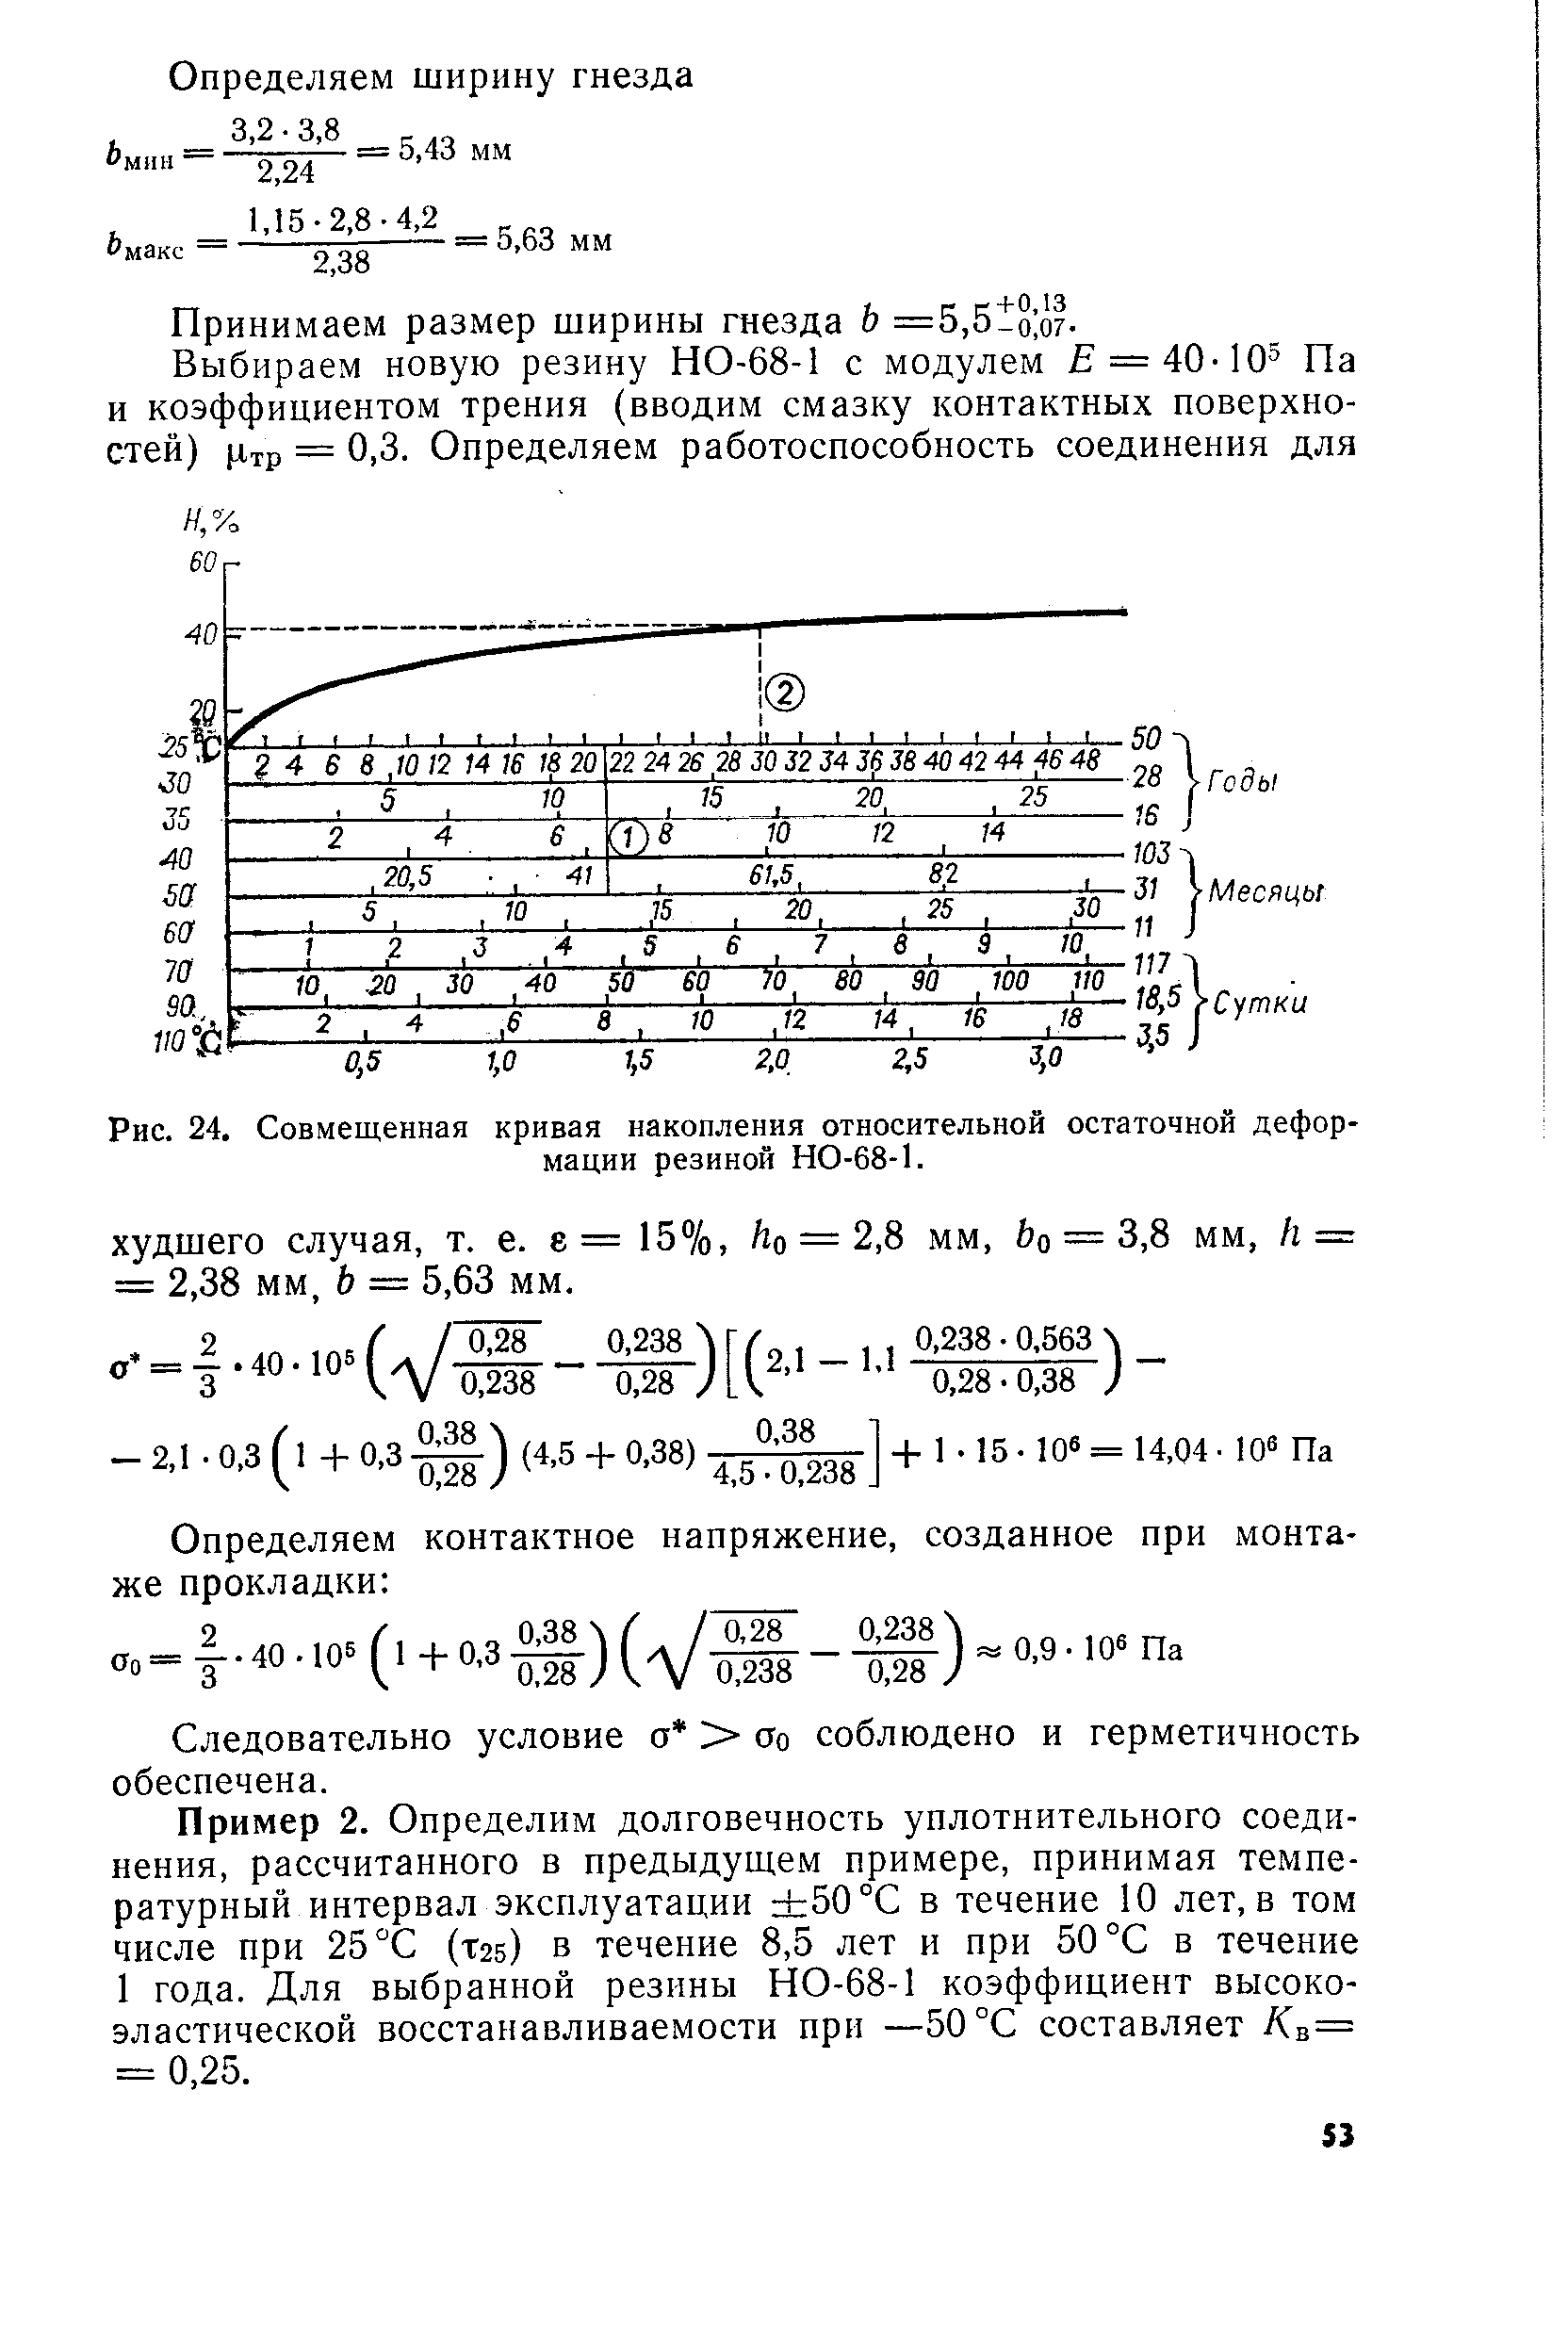 Рис. 24. Совмещенная кривая накопления относительной <a href="/info/6938">остаточной деформации</a> резиной НО-68-1.
